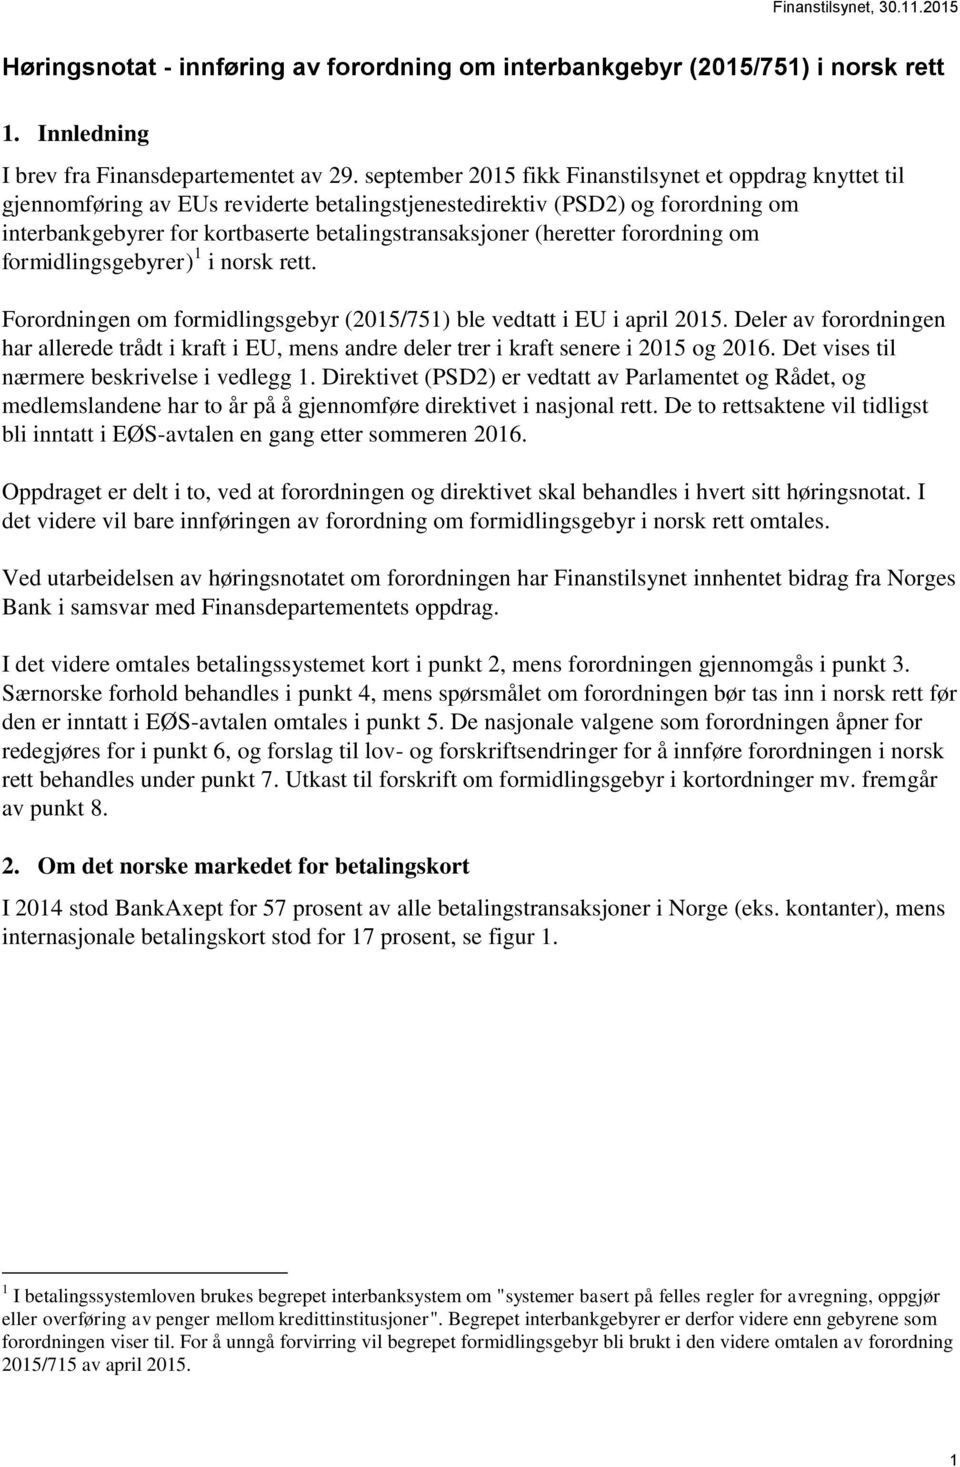 (heretter forordning om formidlingsgebyrer) 1 i norsk rett. Forordningen om formidlingsgebyr (2015/751) ble vedtatt i EU i april 2015.